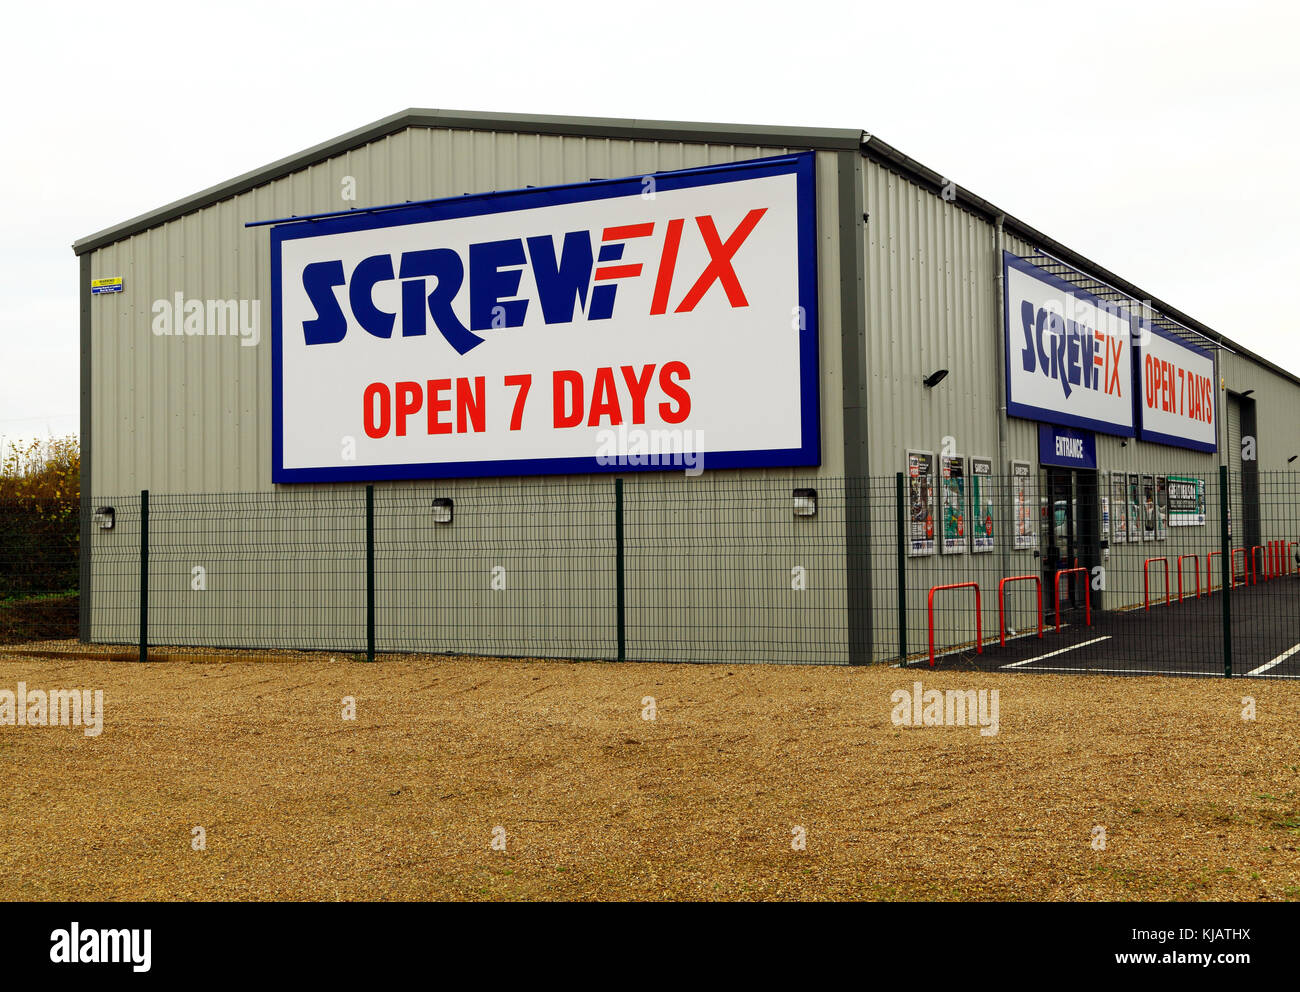 Screwfix, entrepôt, magasin, ouvert 7 jours par semaine, Fakenham, site industriel, Norfolk, England, UK Banque D'Images